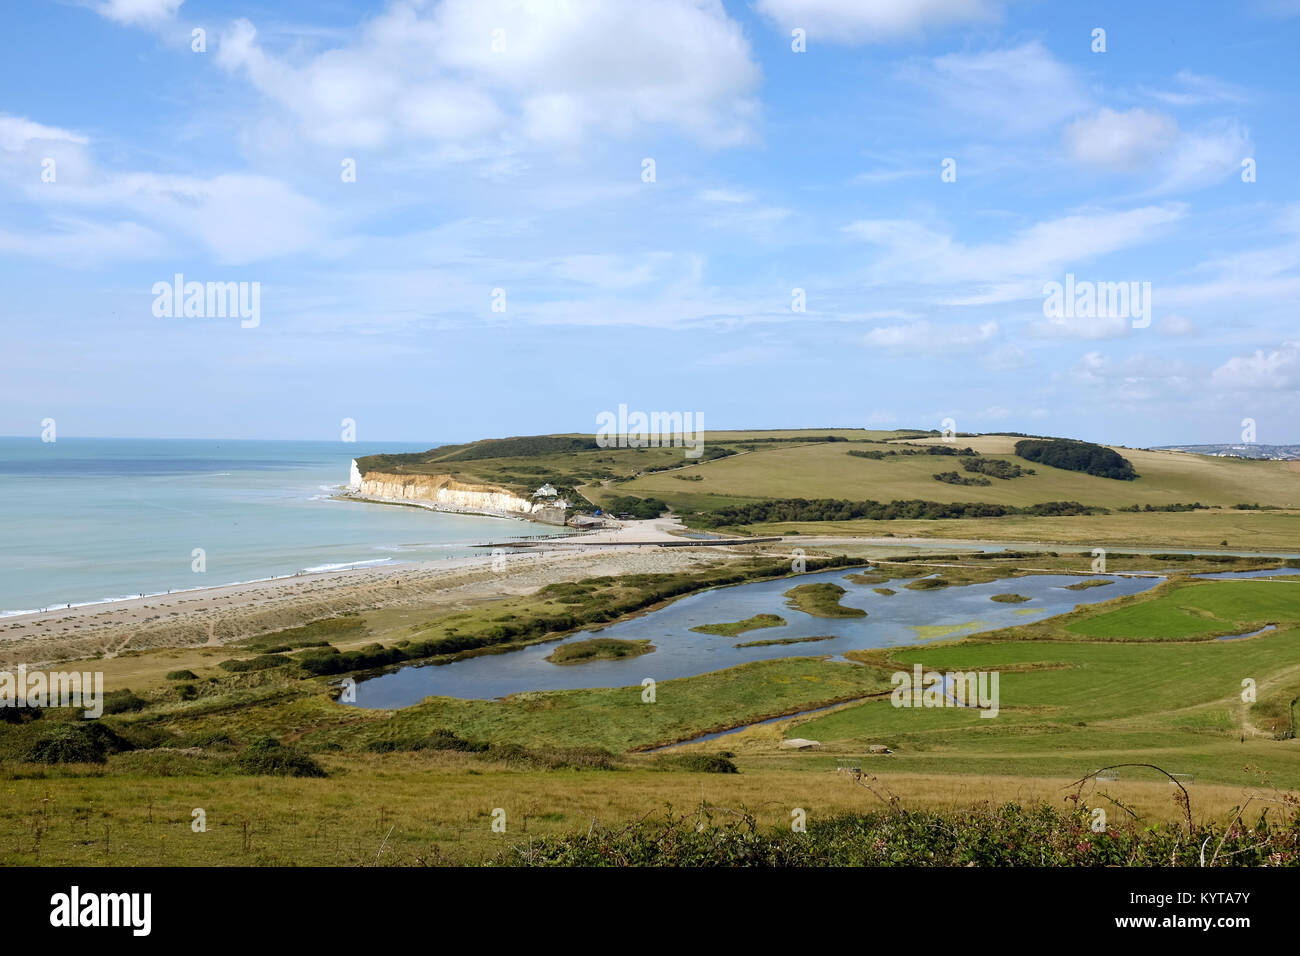 Vue panoramique vers l'ouest le long de la côte sud de Cuckmere Haven, sept Sœurs Country Park, East Sussex, Angleterre, Royaume-Uni. Banque D'Images